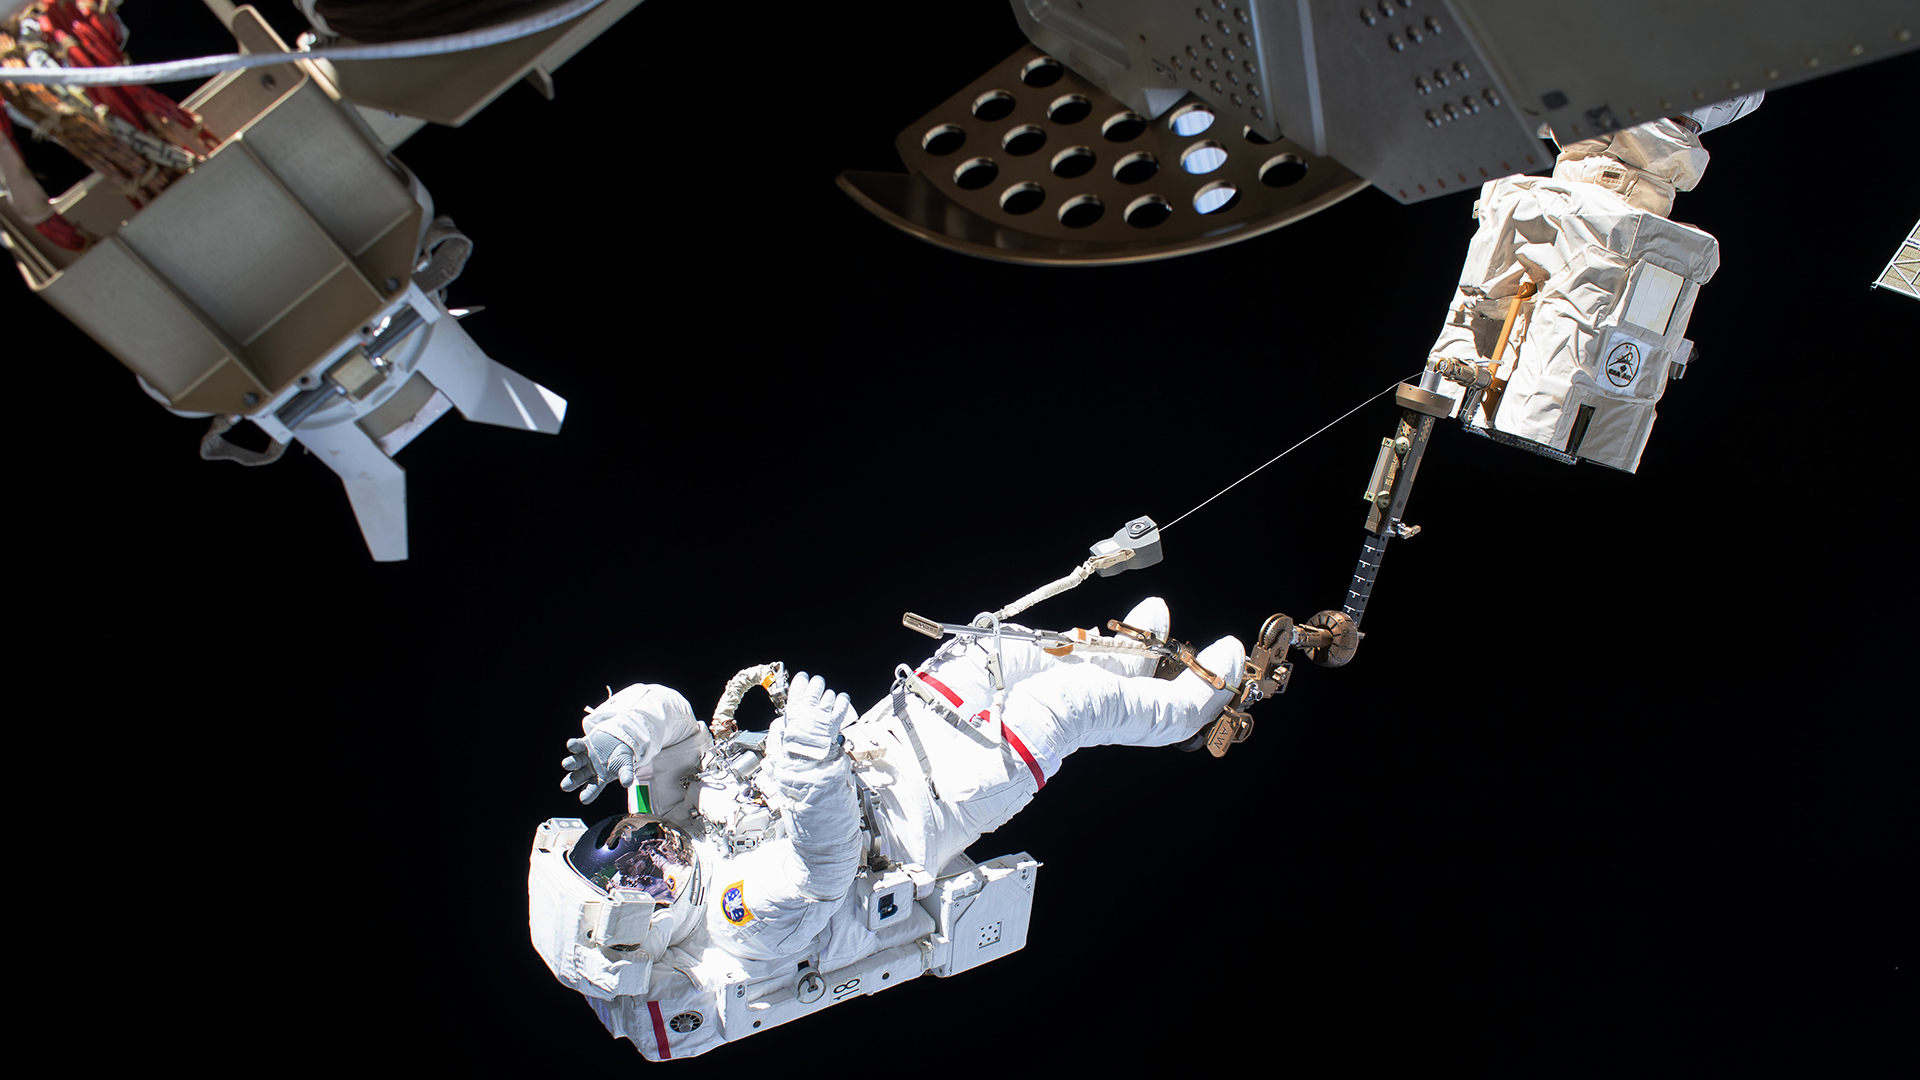 Der ESA-Astronaut Luca Parmitano ist bei einem AuÃeneinsatz an der Internationalen Raumstation ISS über den Roboterarm Canadarm2 gesichert. | picture alliance/dpa/Nasa